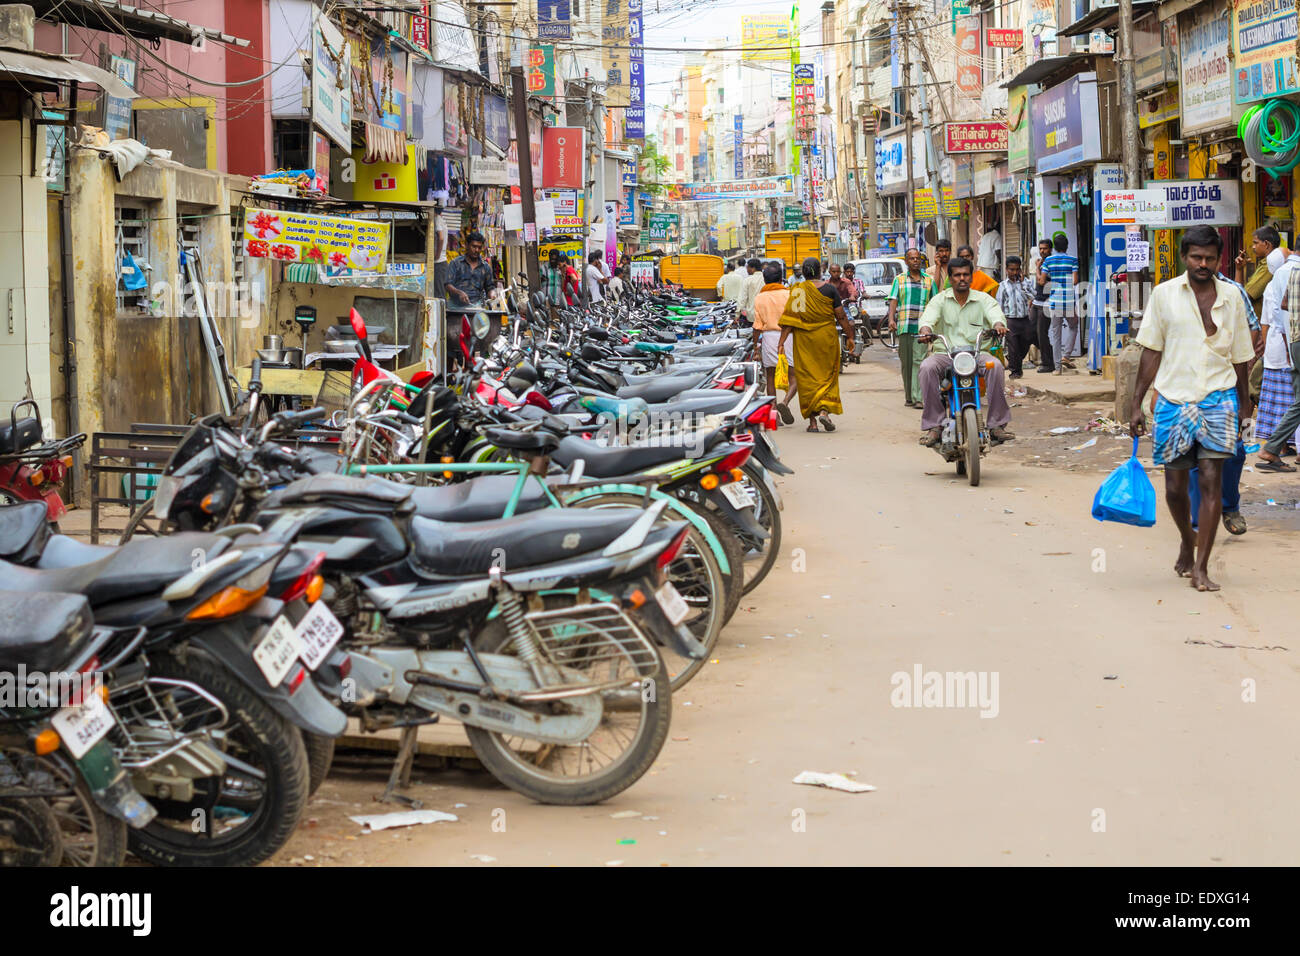 MADURAI, India - 15 de febrero: ciudad India calle llena de personas no identificadas que visita cada día. La India, Tamil Nadu, Madur Foto de stock